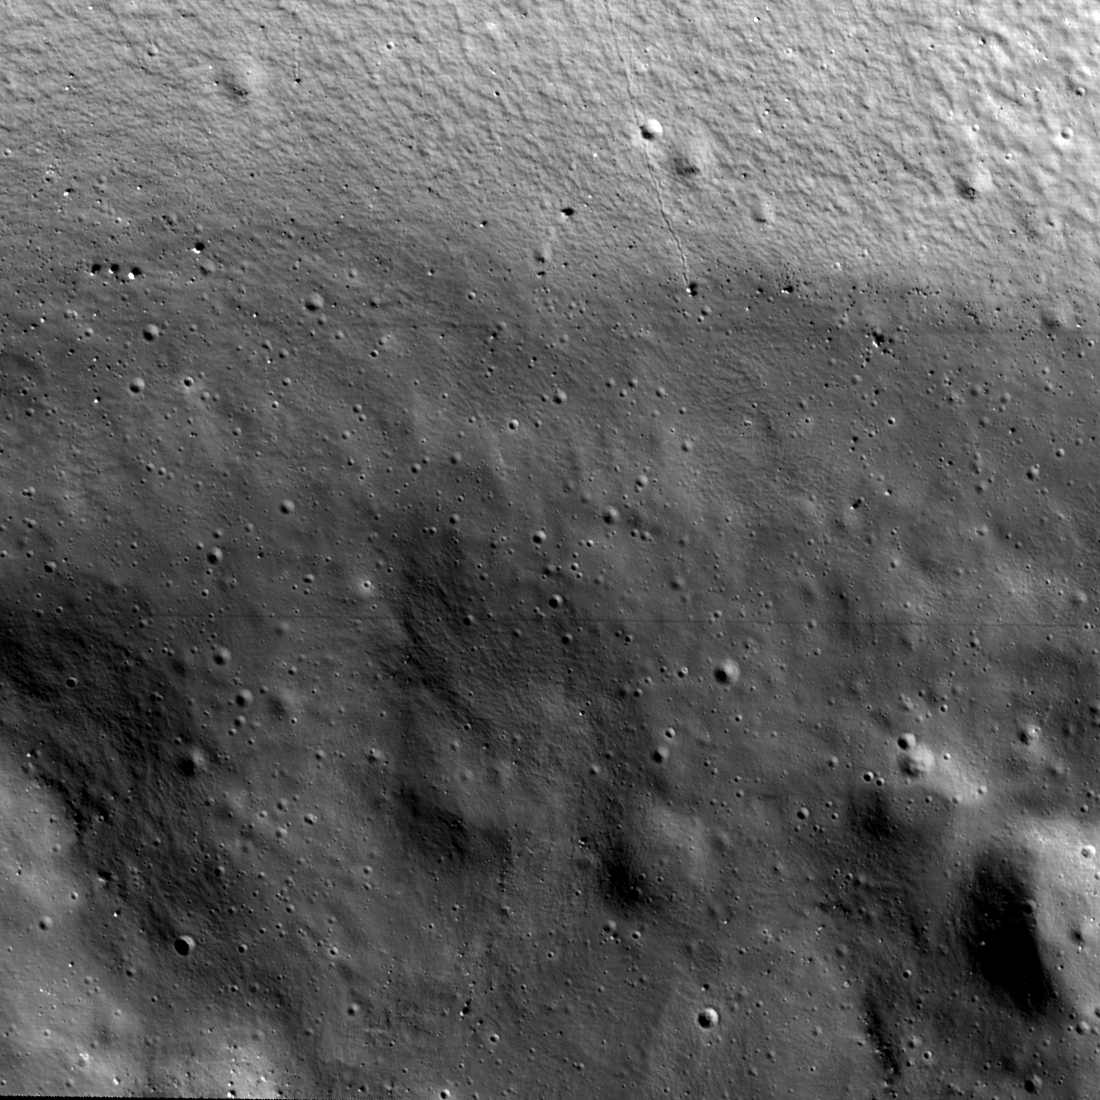 Δείτε το σημείο προσγείωσης του Artemis 3 στο νότιο πόλο της Σελήνης σε νέες εικόνες της NASA